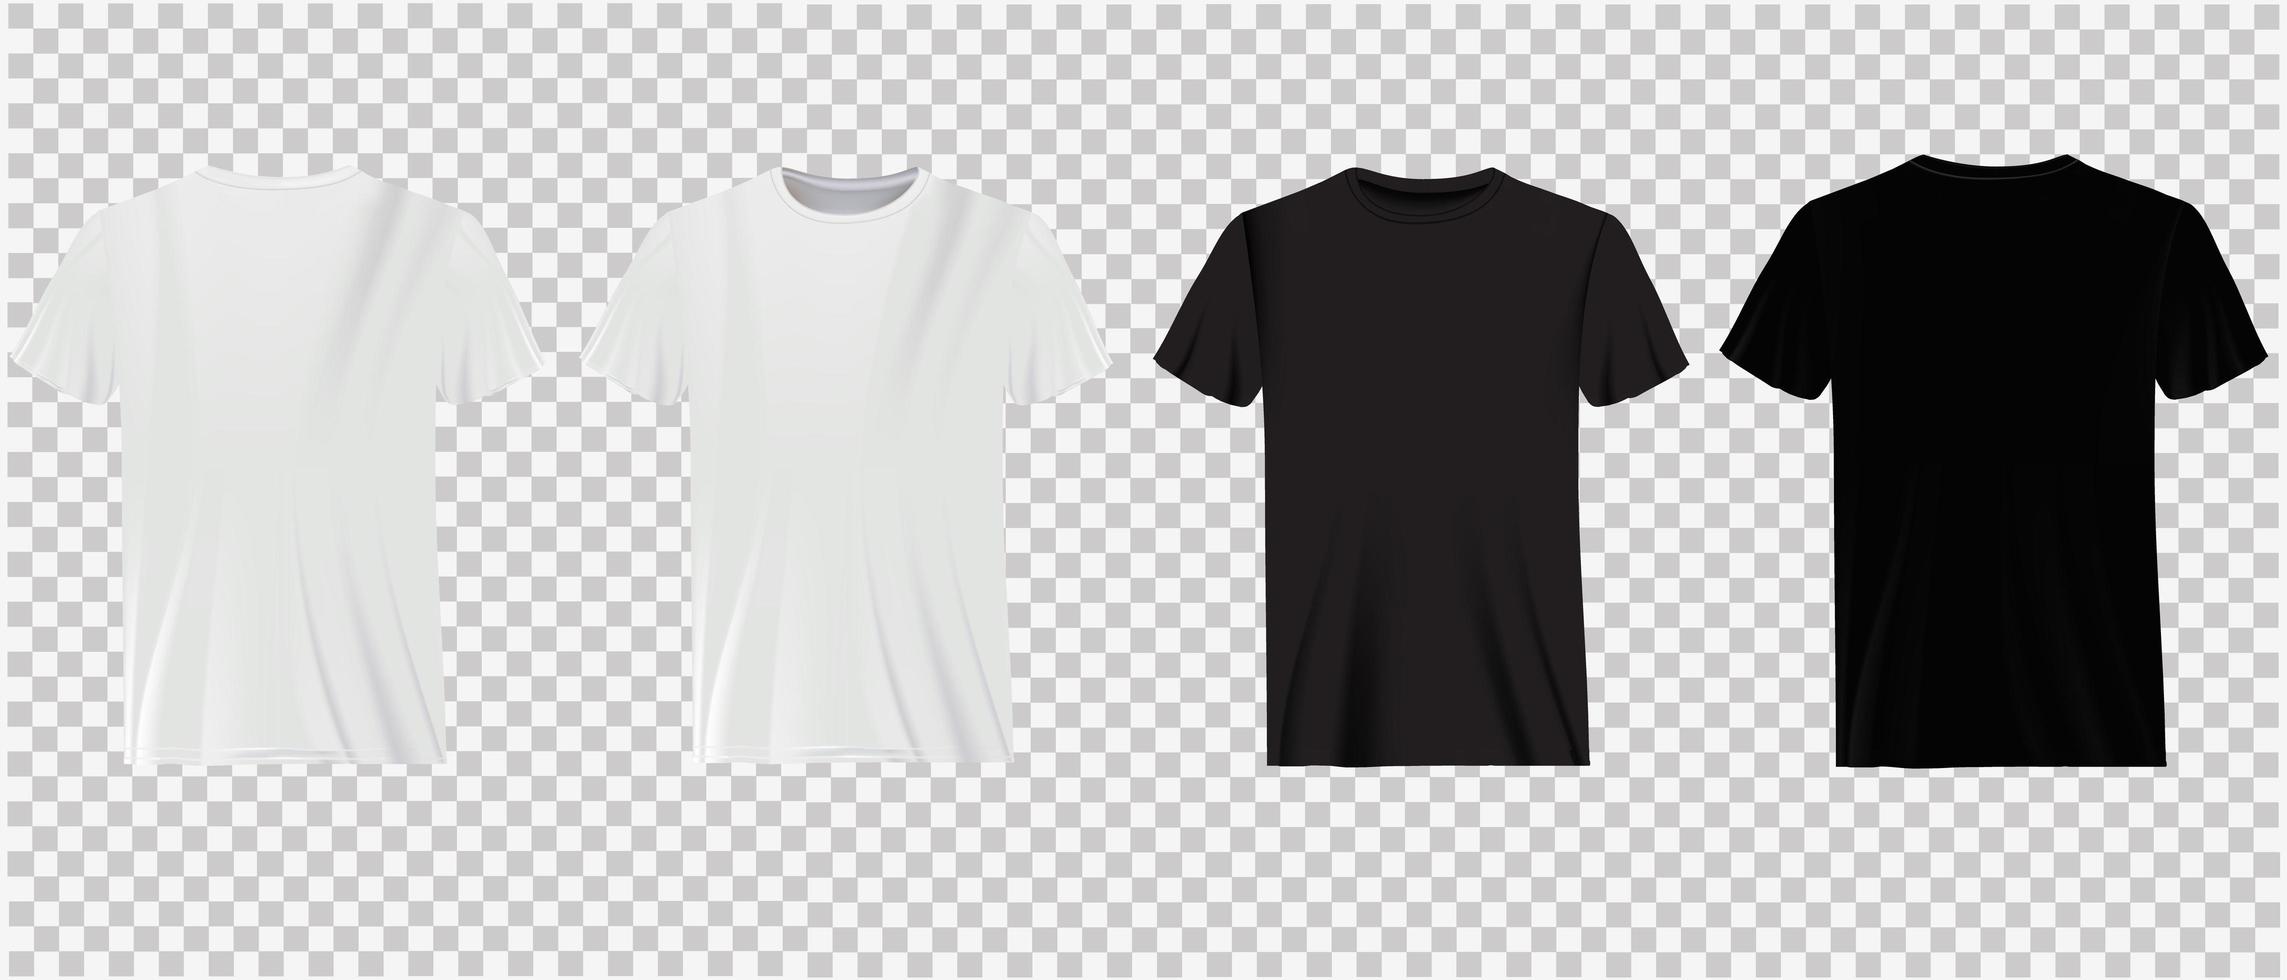 t-shirts blancs et noirs sur la transparence vecteur